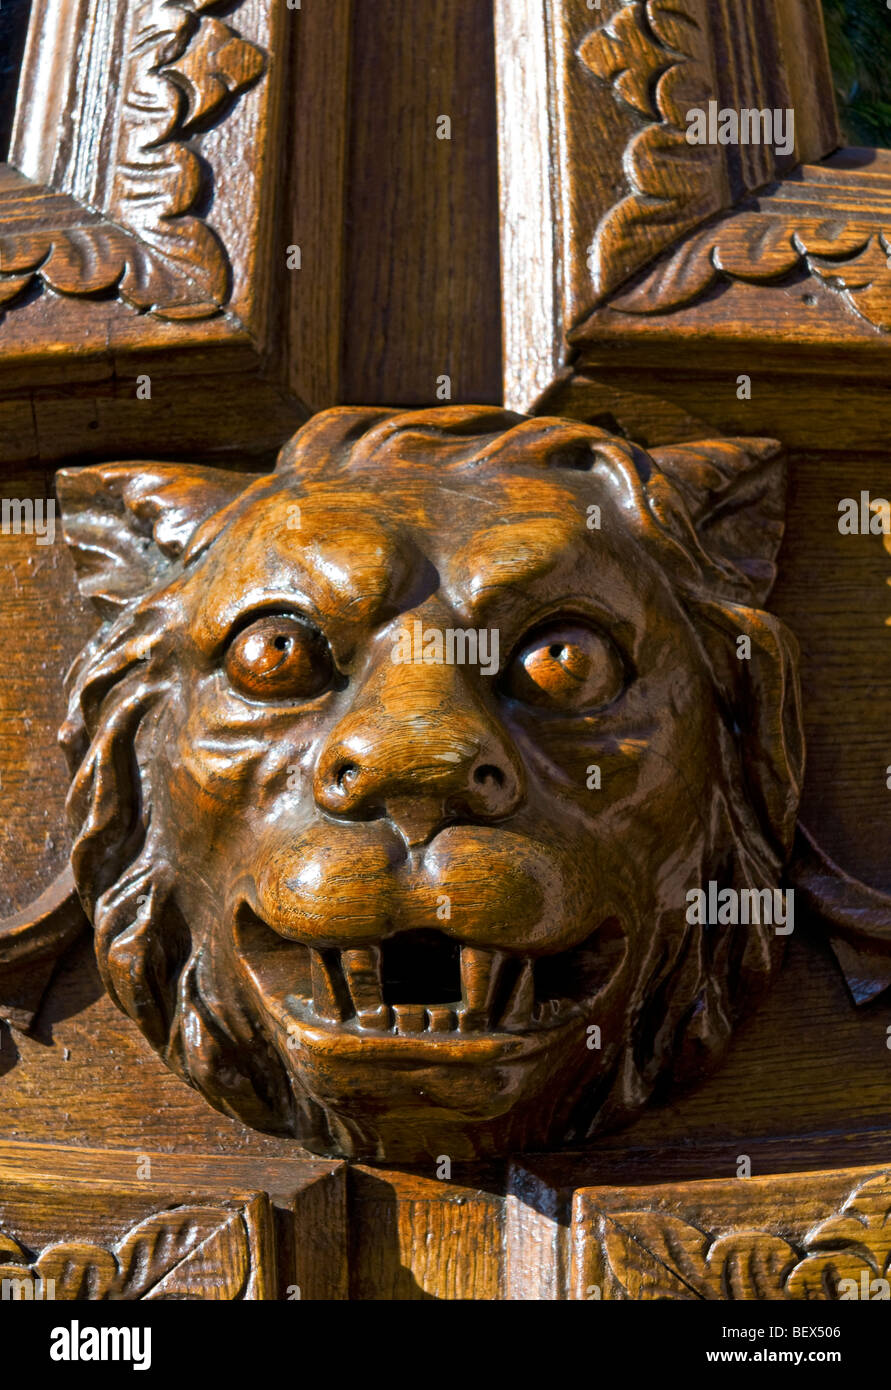 La sculpture ornée d'un lion féroce mythique en tant que gardien de la grande porte d'entrée des bois Banque D'Images